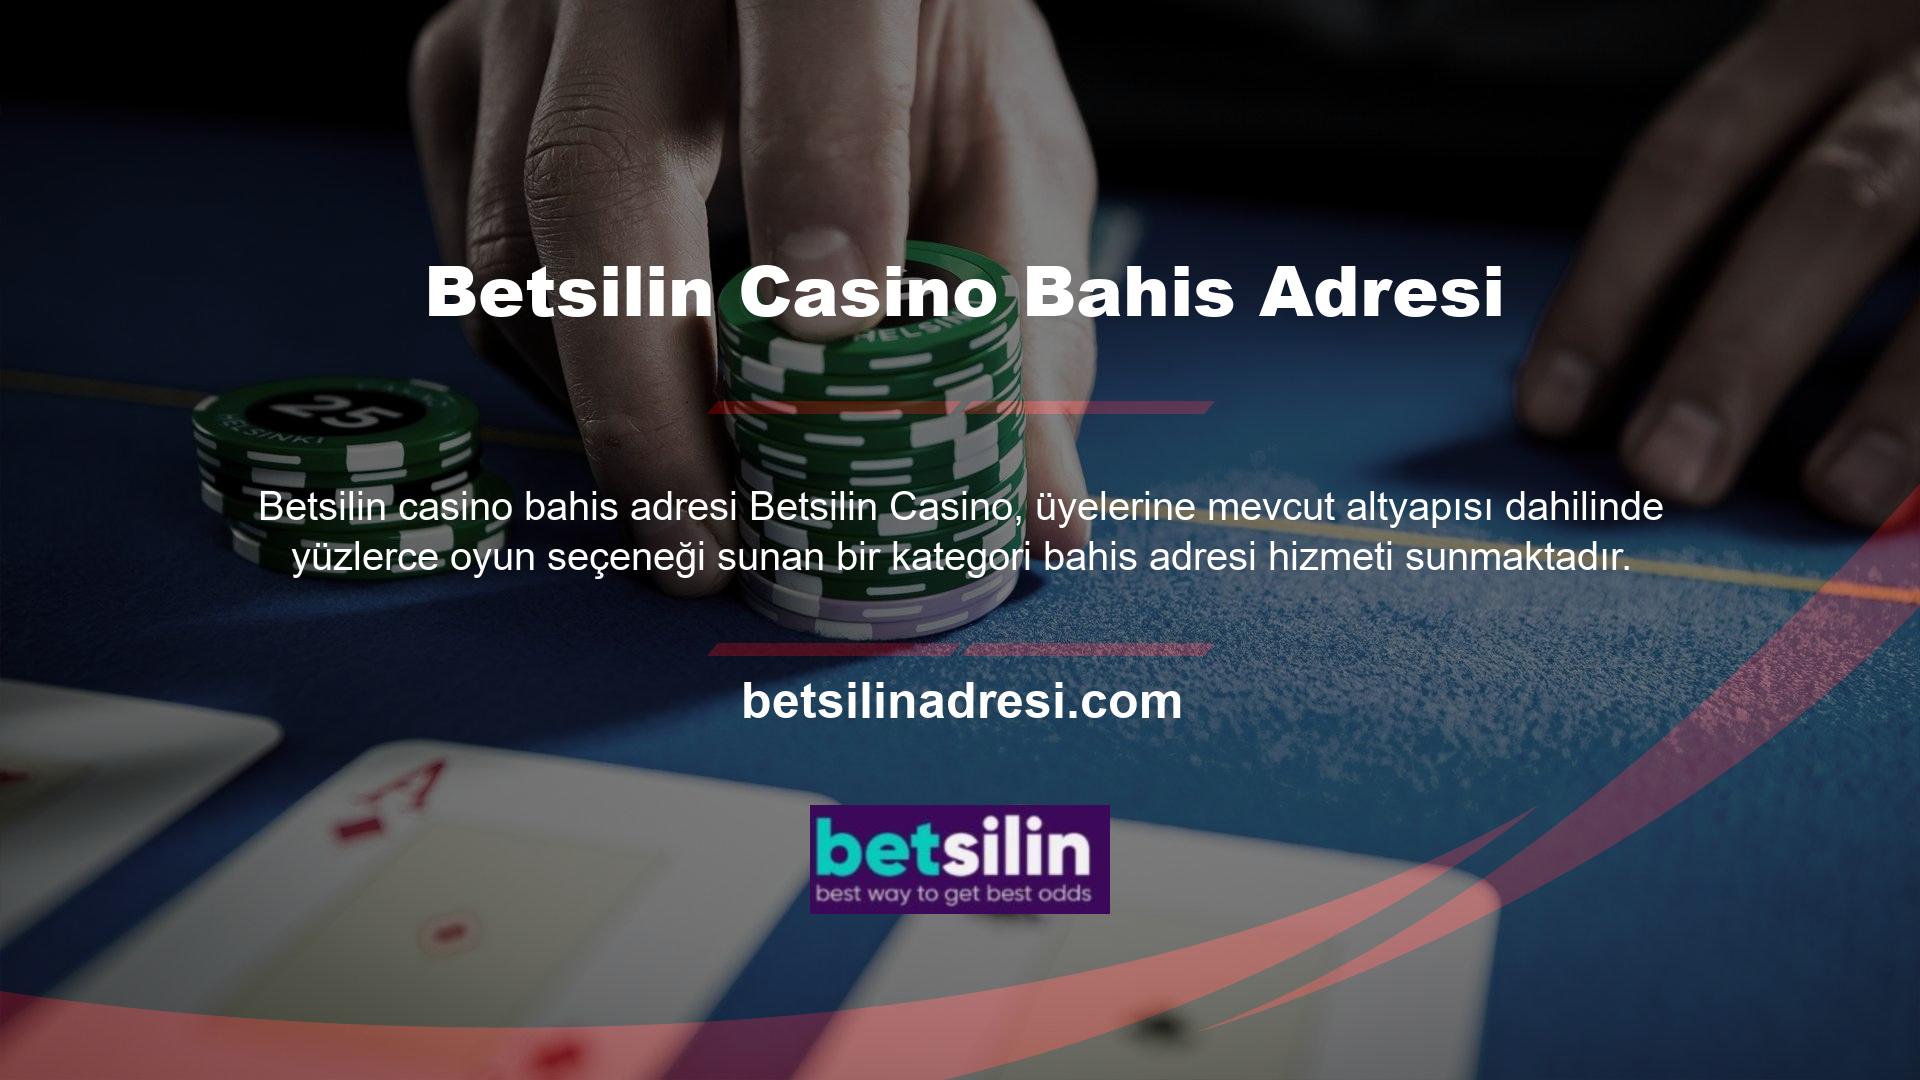 Betsilin Online 7/24 DestekBunlar oyuncuların bilmek isteyeceği ortak özelliklerdir